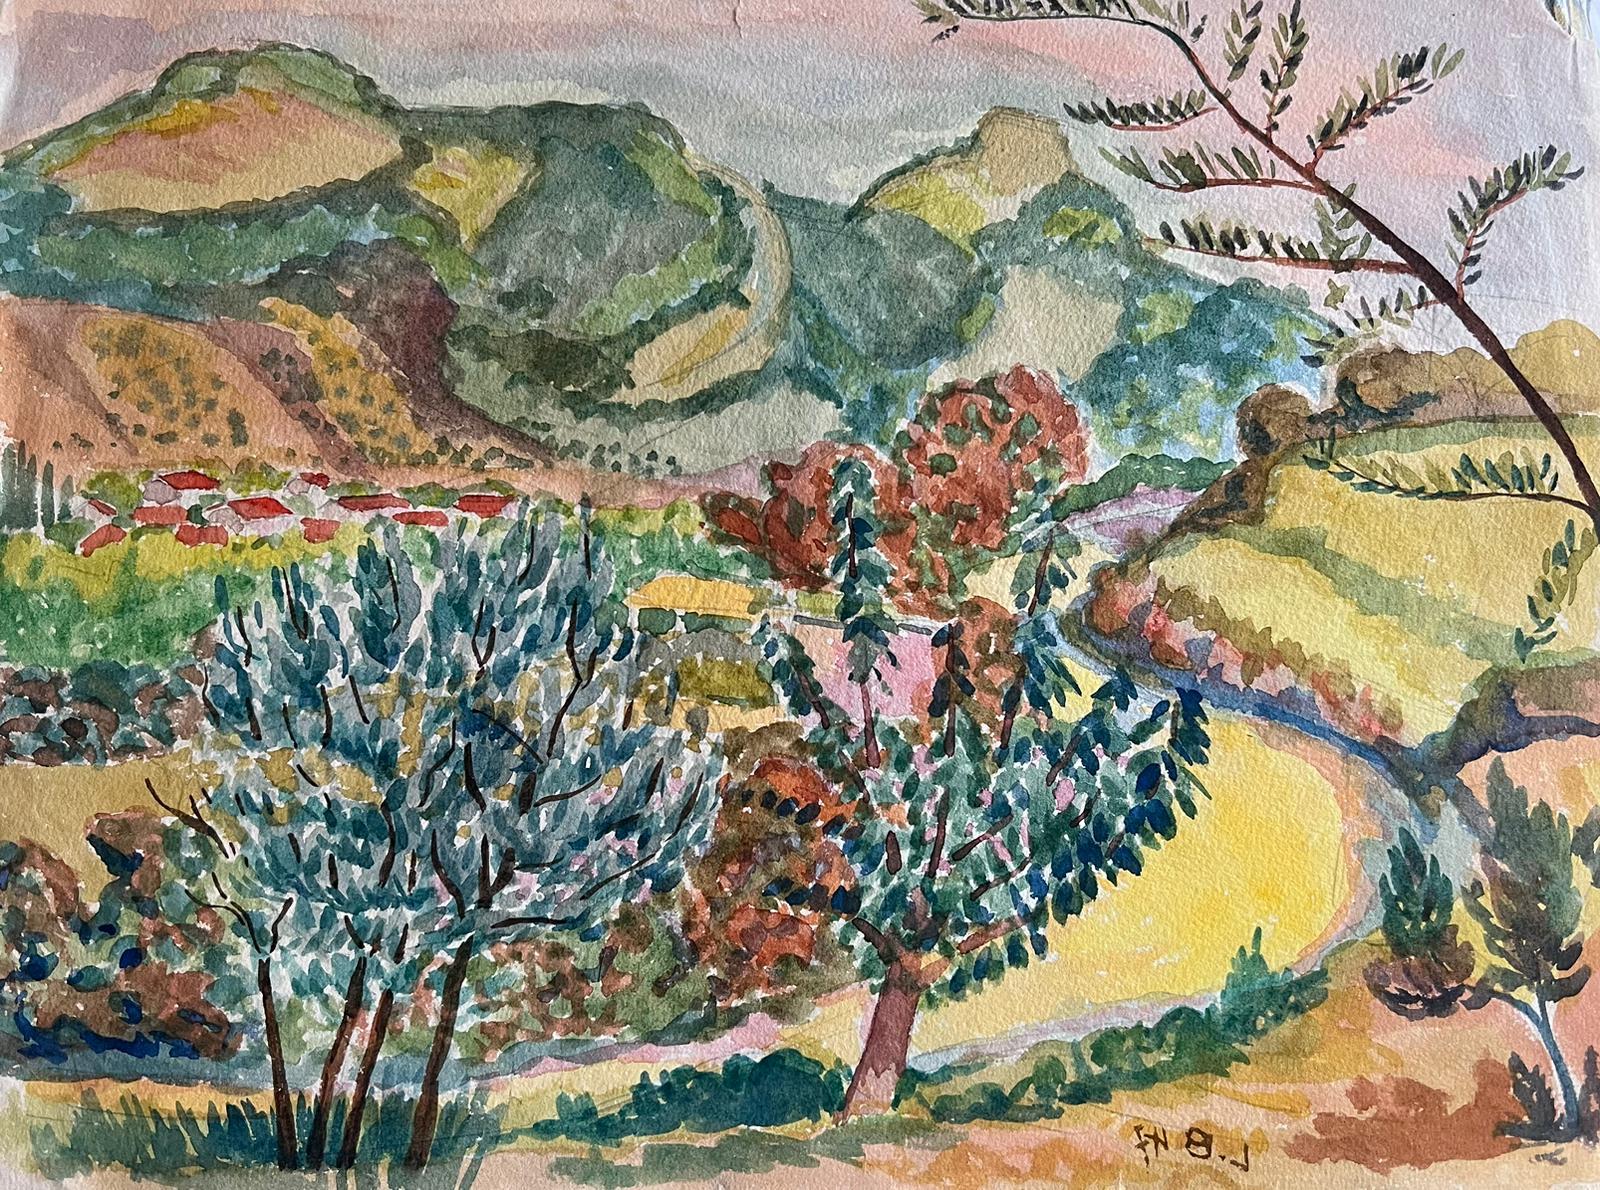 Louis Bellon Landscape Painting - 1940's Provence France Painting Sunny Warm Landscape - Post Impressionist artist